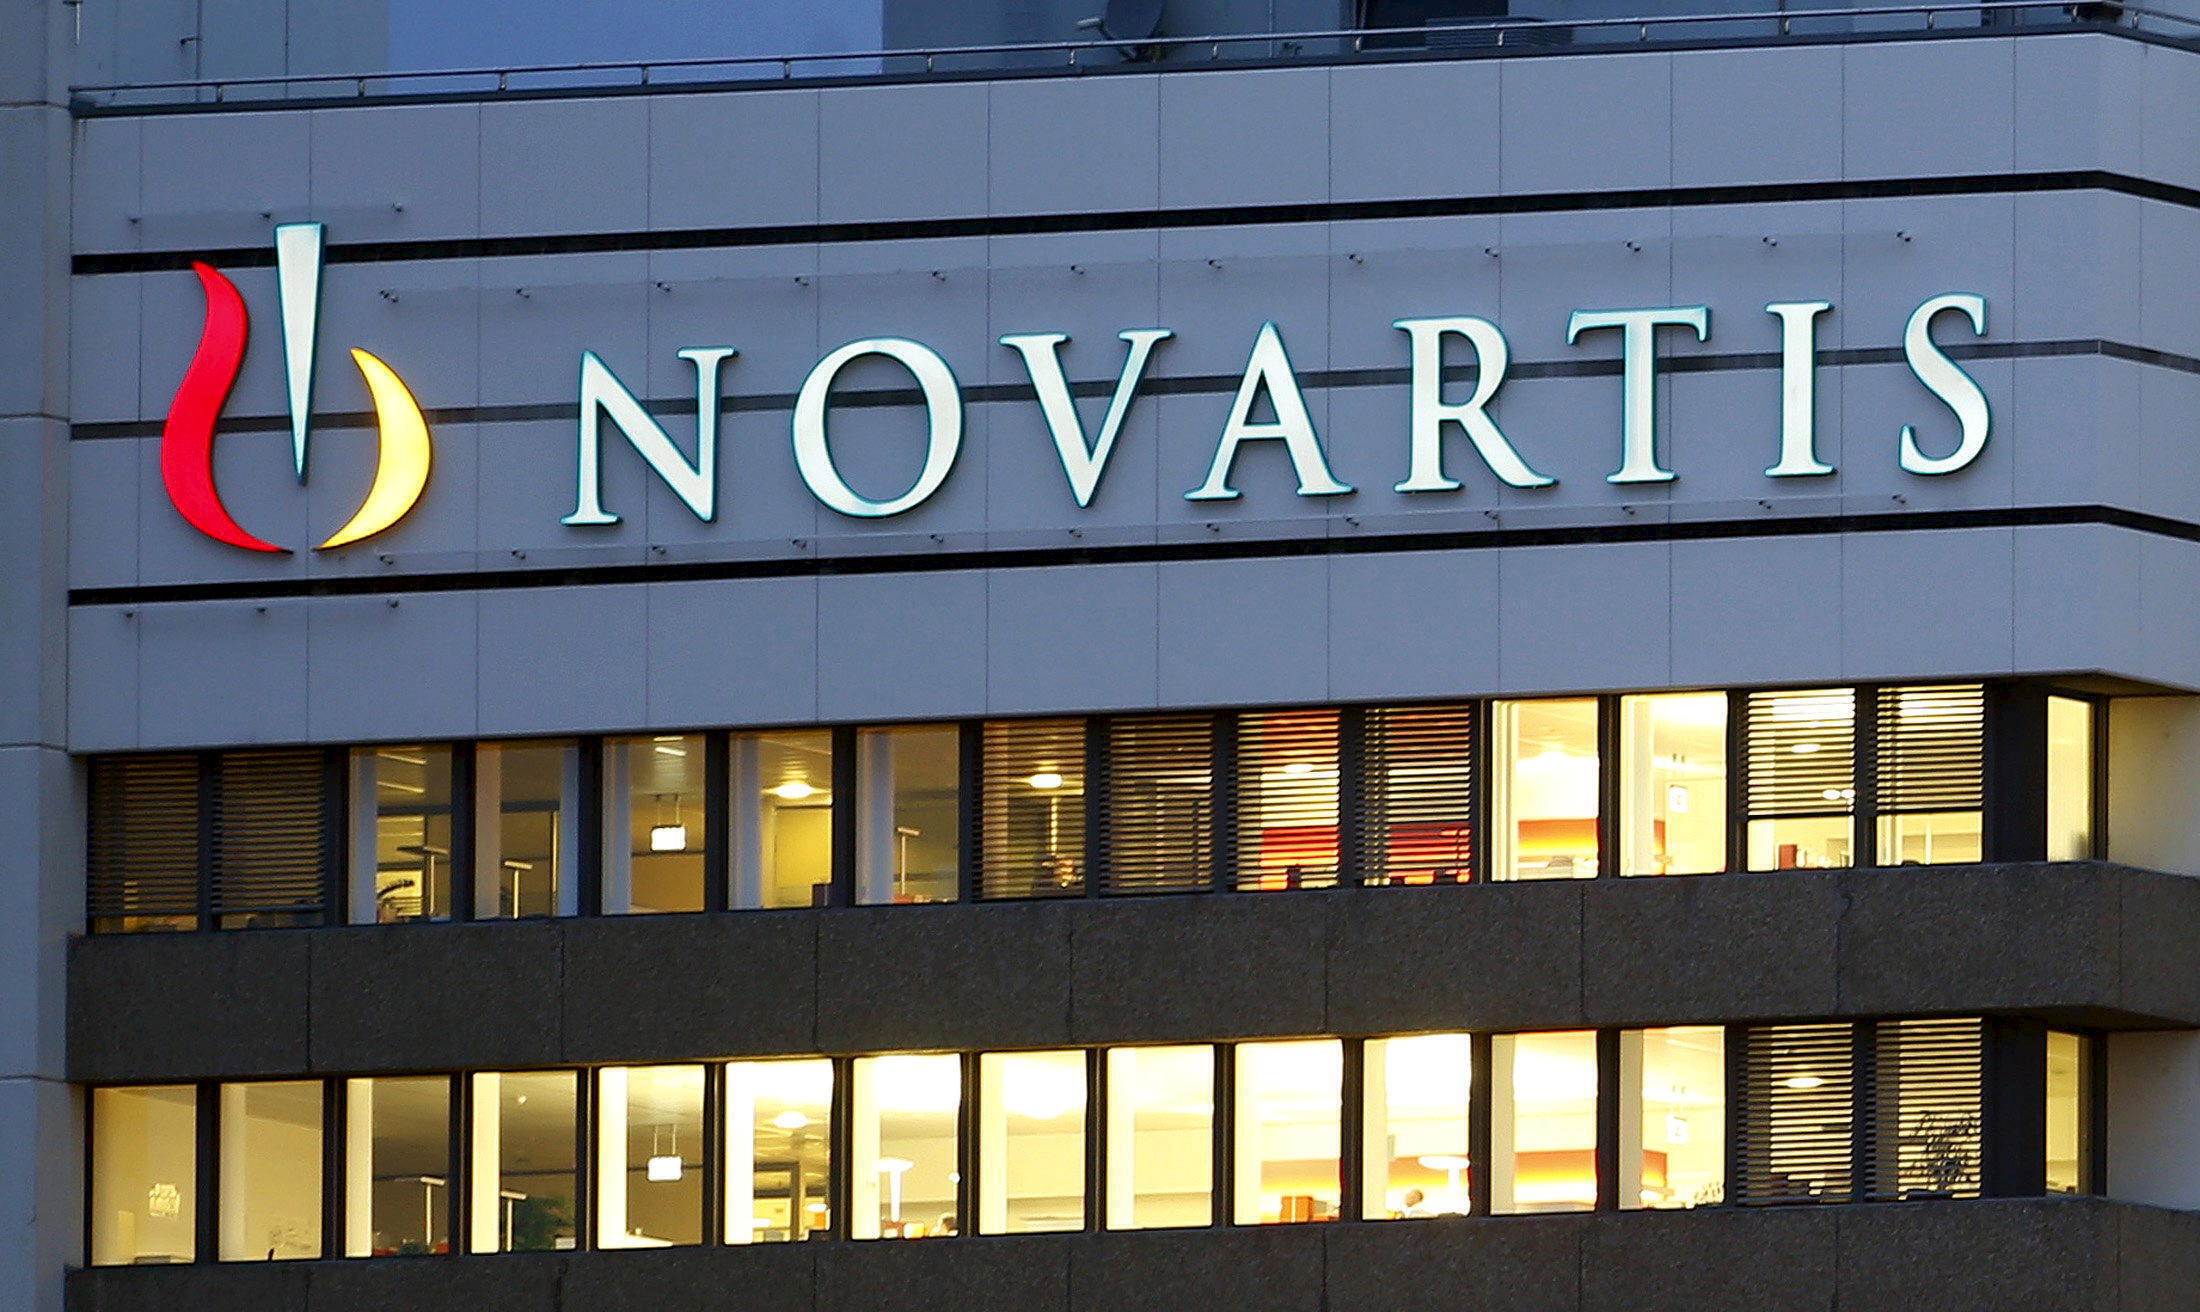 Υπόθεση Novartis: Έρευνα εφ όλης της ύλης από τον Άρειο Πάγο μετά τις καταγγελίες Αγγελή